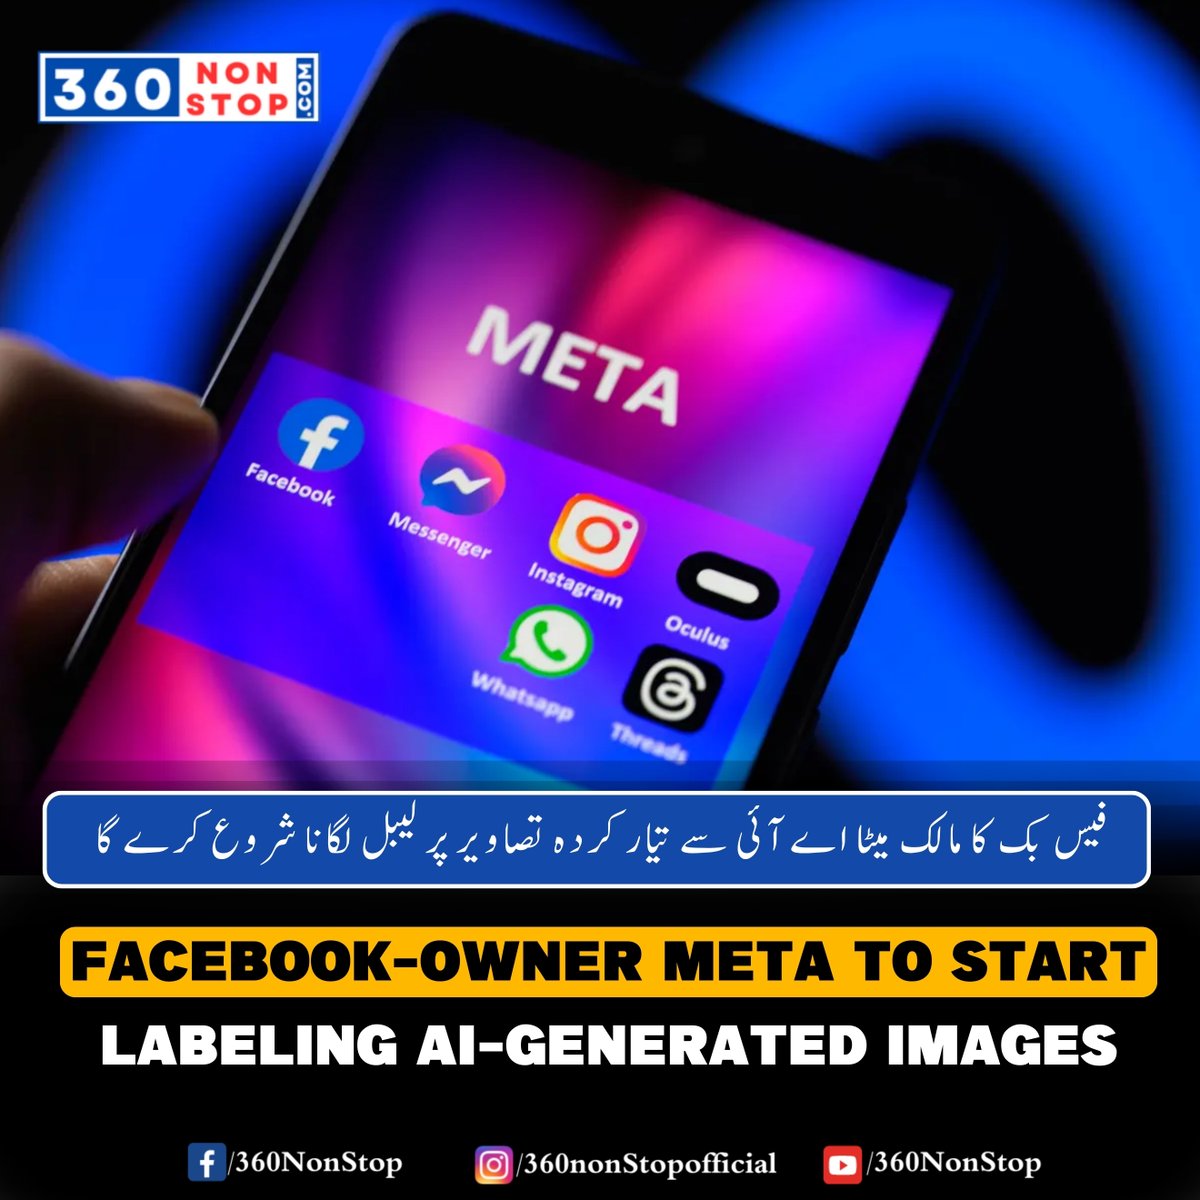 فیس بک کا مالک میٹا اے آئی سے تیار کردہ تصاویر پر لیبل لگانا شروع کرے گا
🌟 Tech Update: Facebook-owner Meta to start labeling AI-generated images.

#MetaNews #AIImageLabeling #TechTransparency #SocialMediaUpdates #CurrentAffairs #DailyInsights #360NonStop